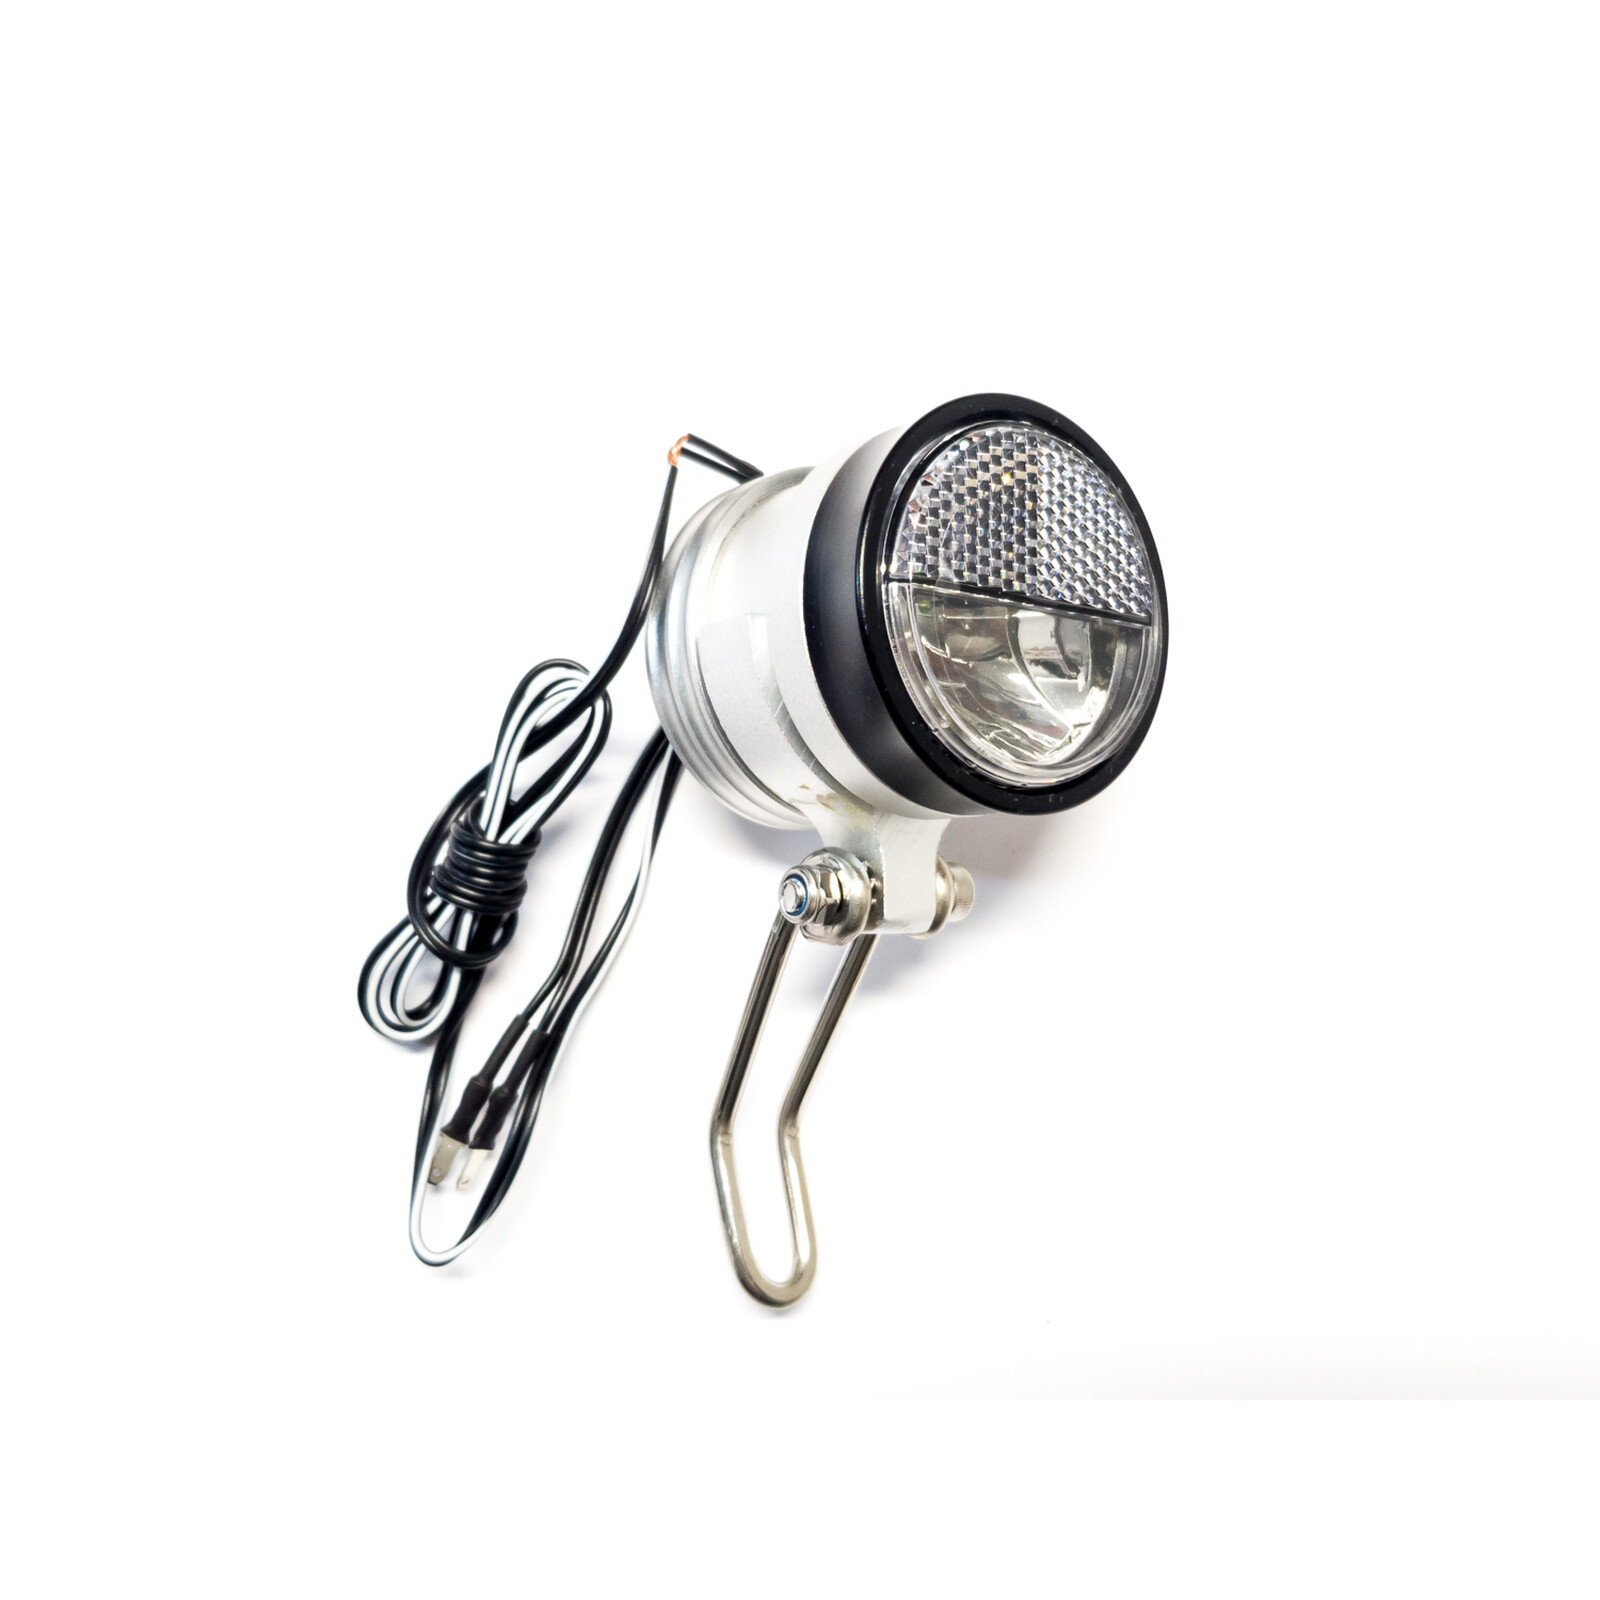 Fahrrad Scheinwerfer LED Nabendynamo Schalter Standlicht 20 Lux Lampe Frontlampe 